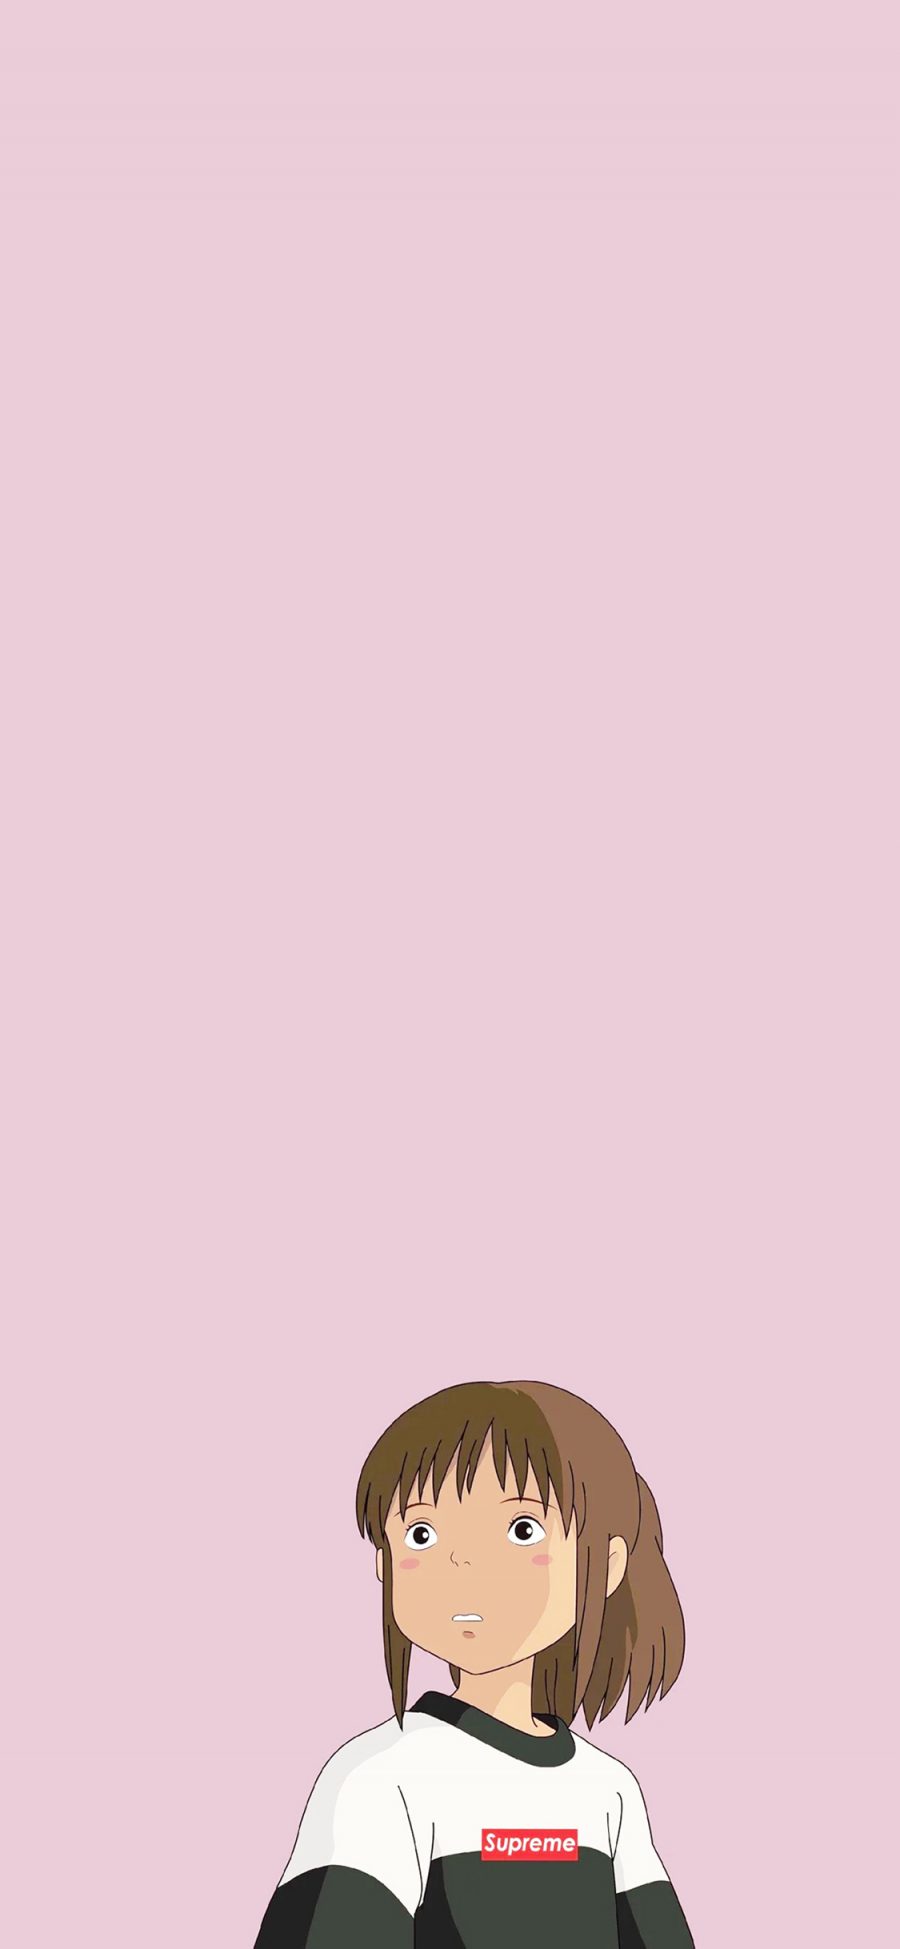 [2436×1125]千与千寻 宫崎骏 日本 动画 电影 苹果手机动漫壁纸图片